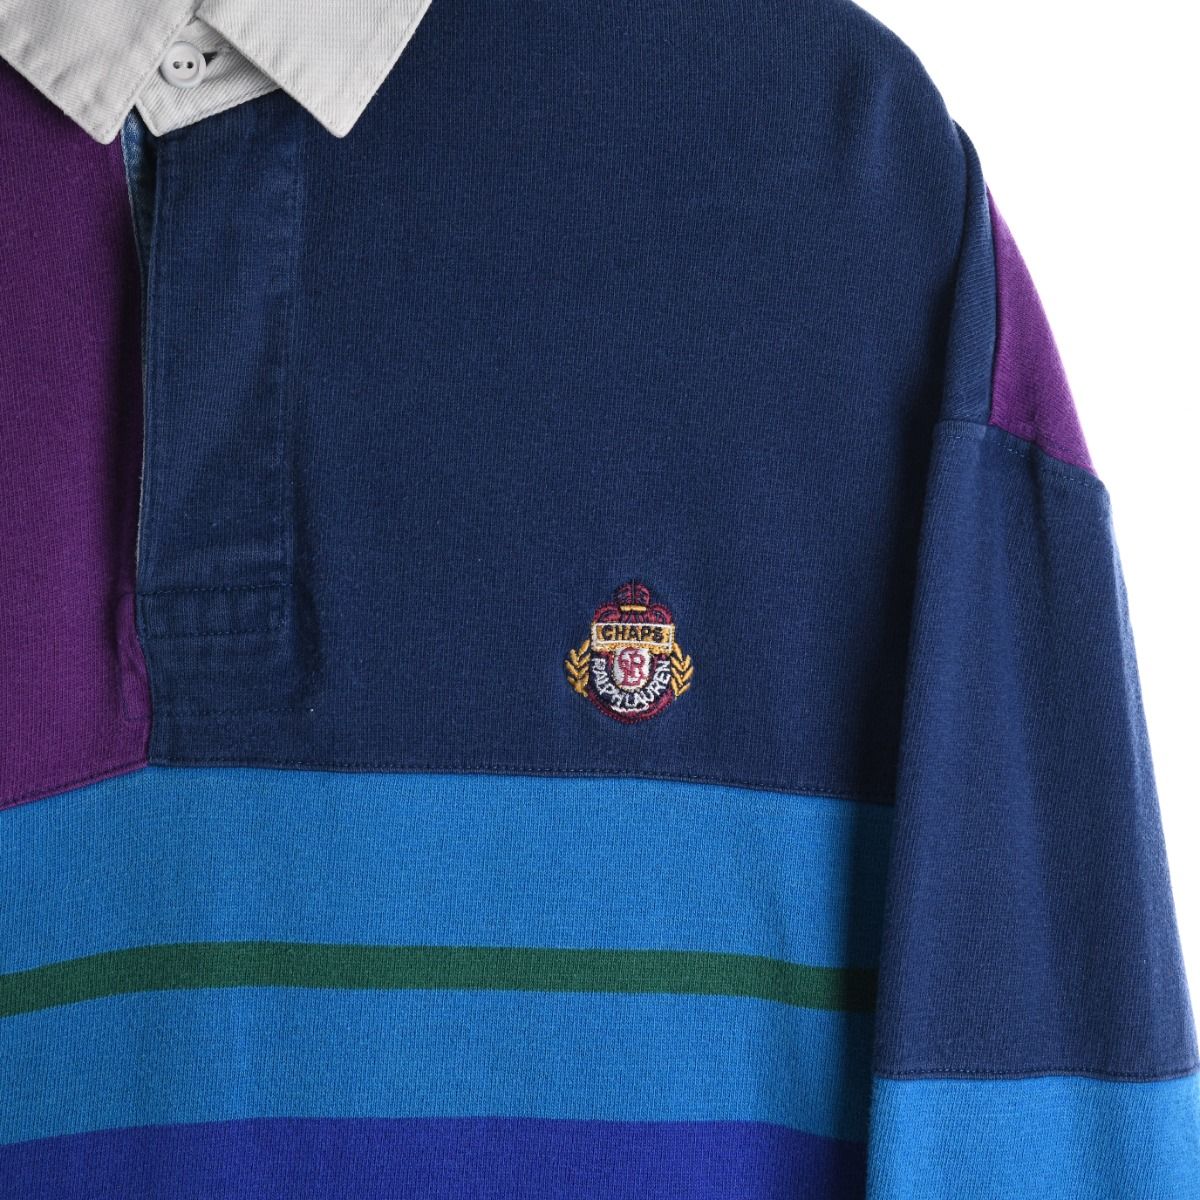 Ralph Lauren Chaps 1990s Rugby Shirt